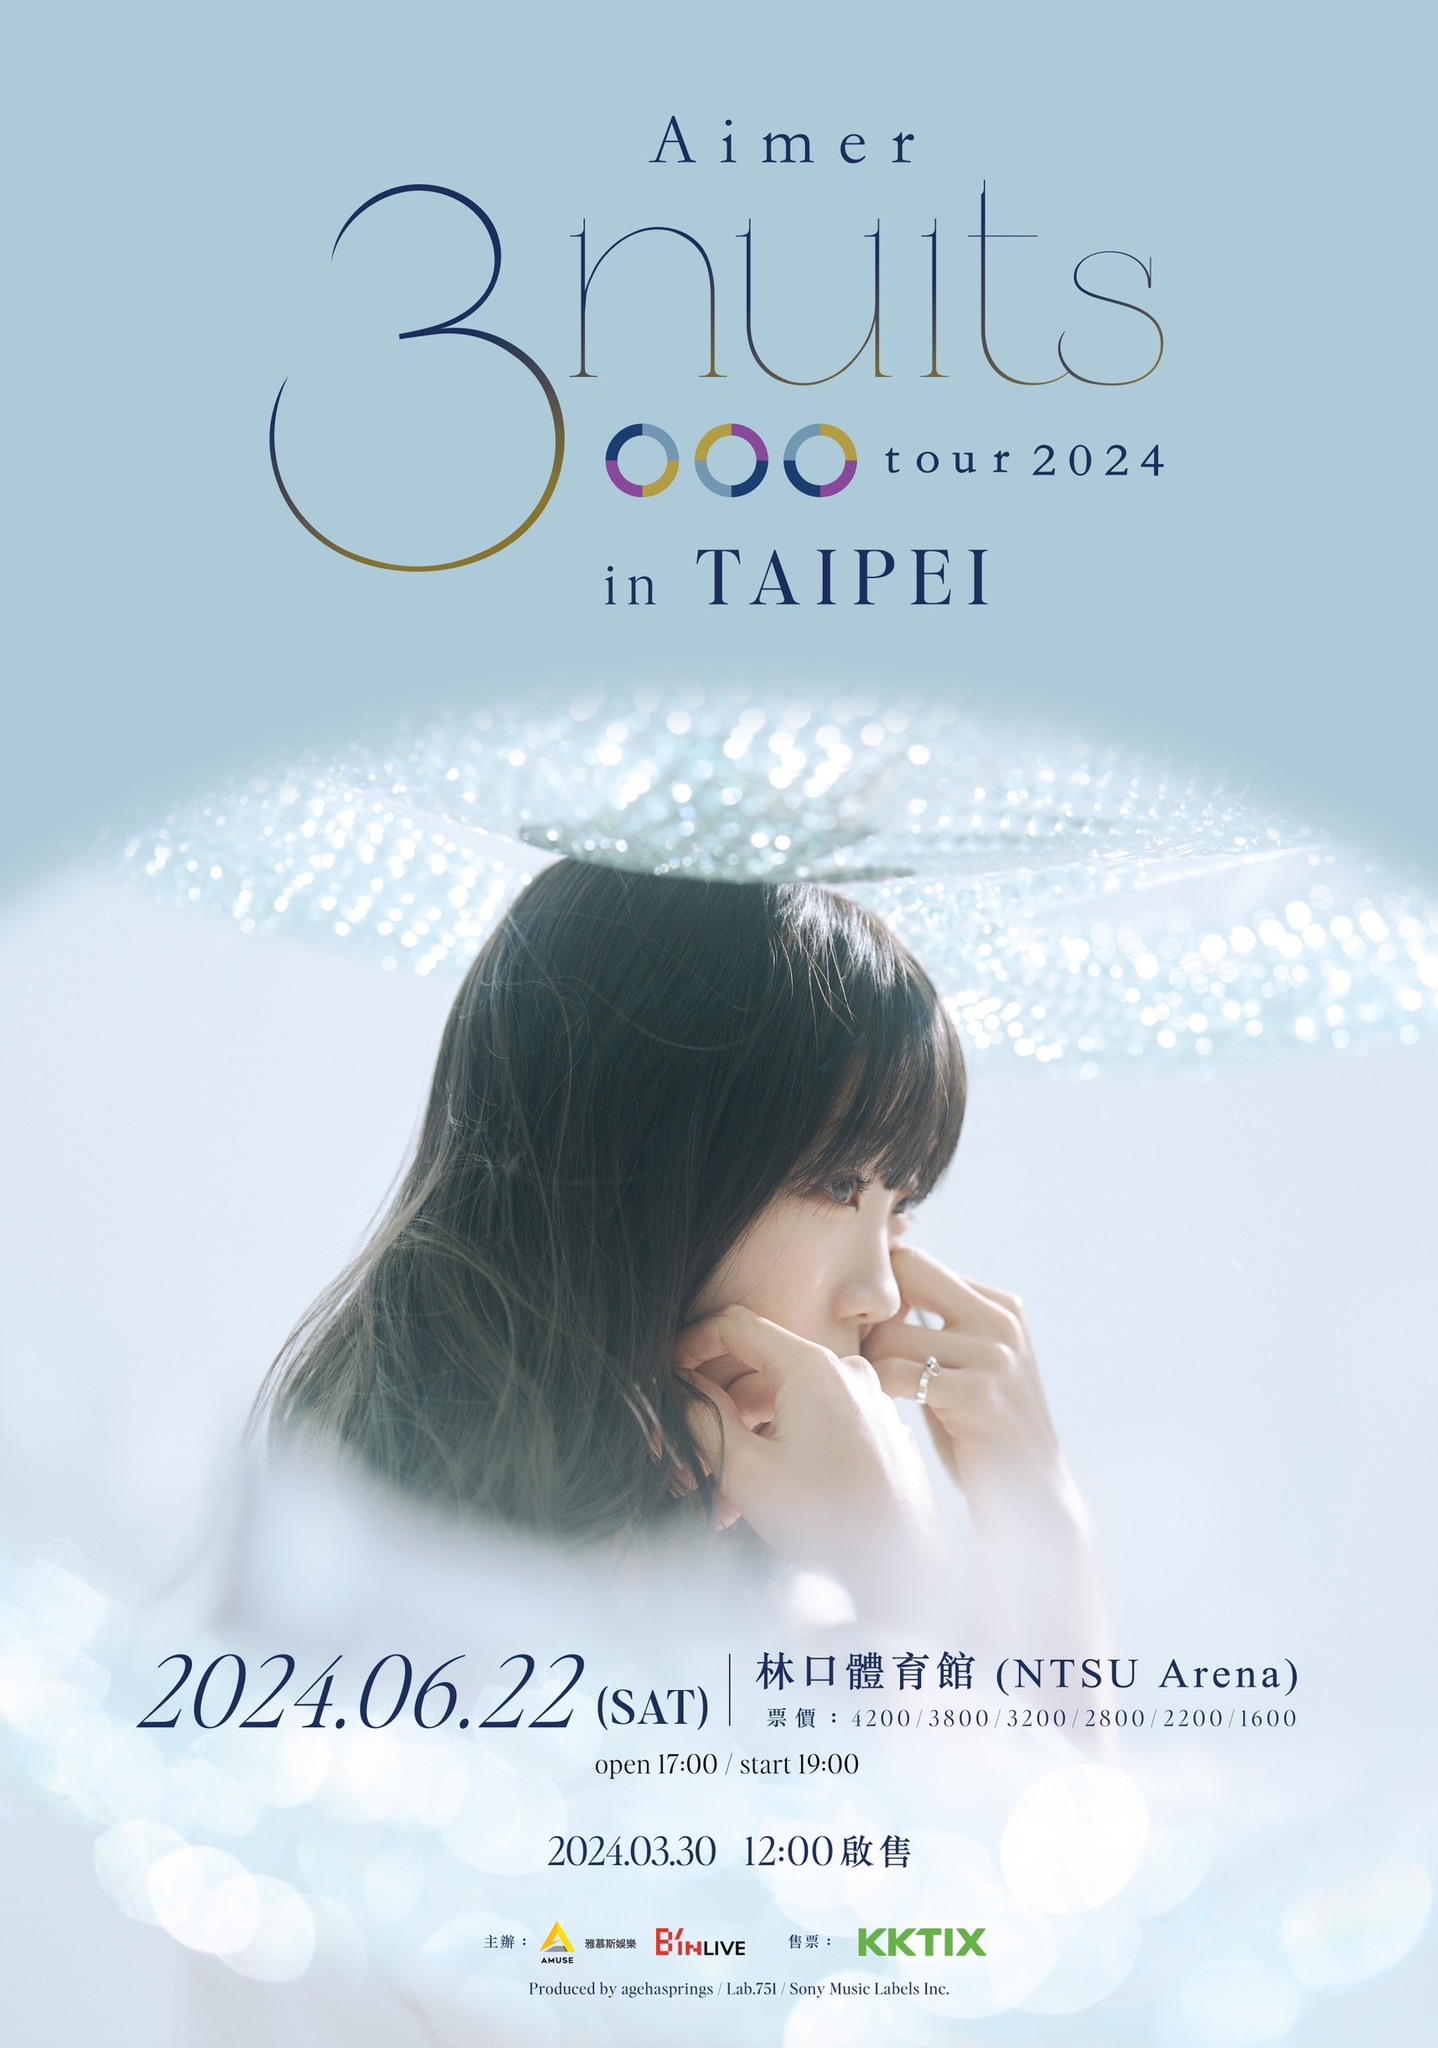 Aimer演唱會2024台北站｜Aimer 3 nuits tour 2024 in Taipei｜林口體育館